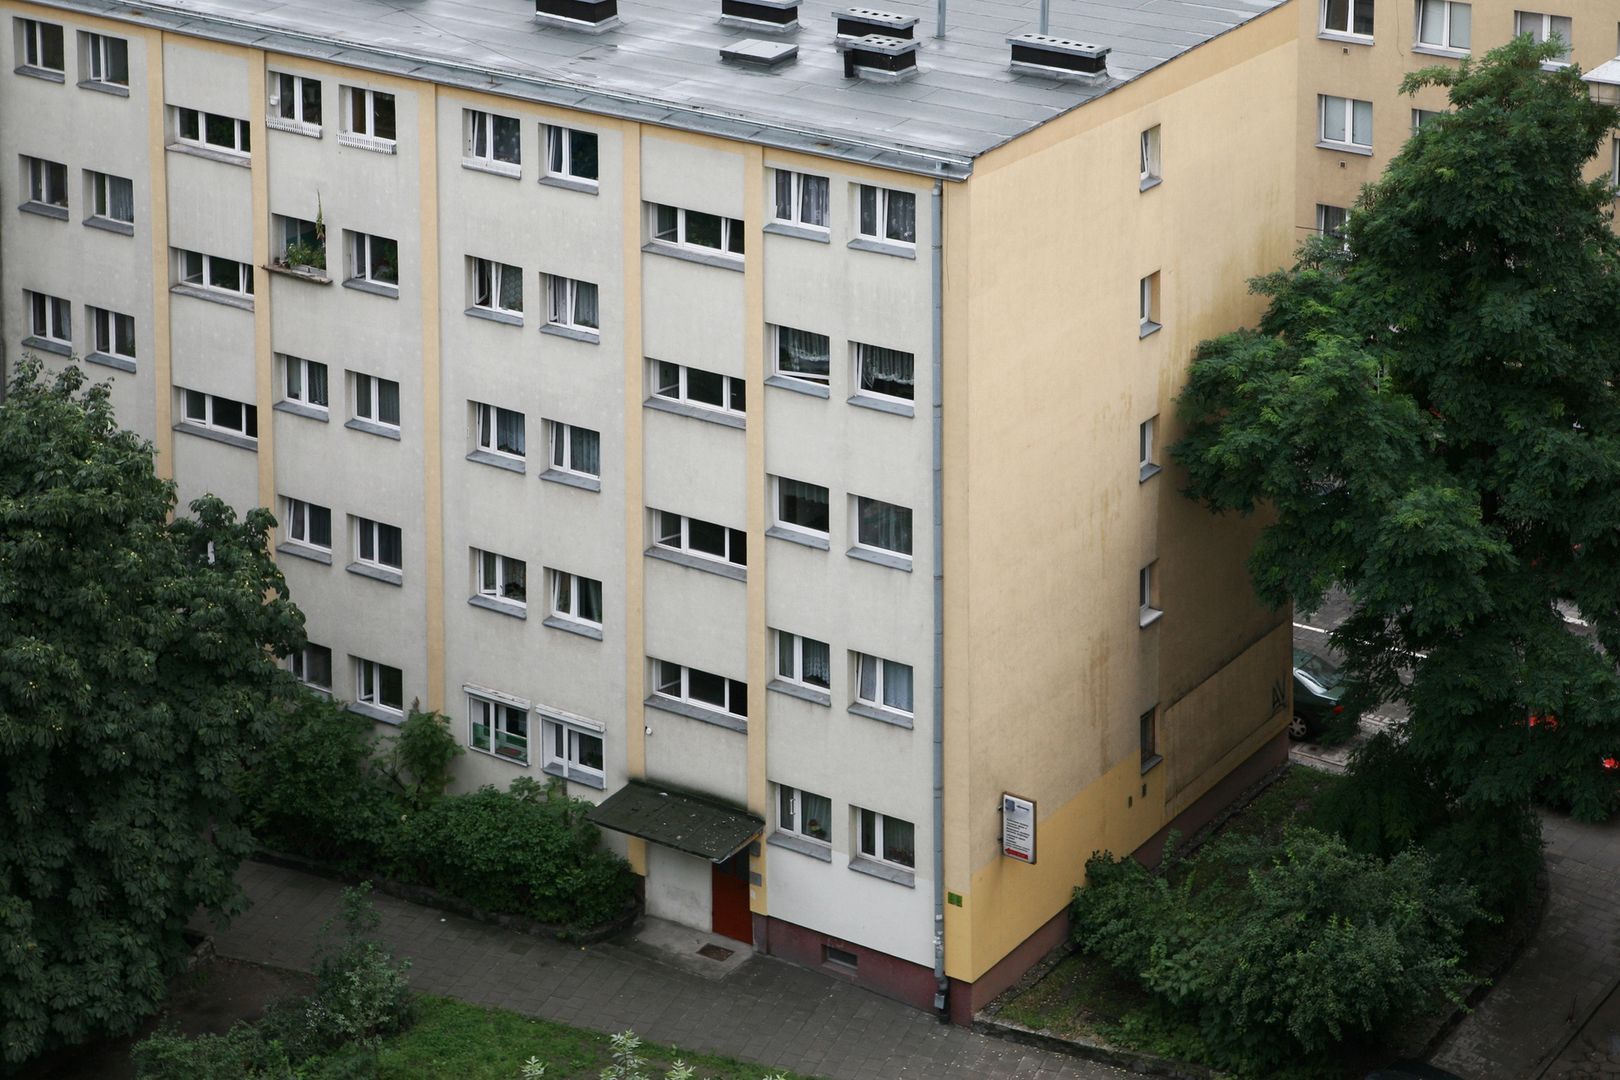 Mieszkania we Wrocławiu za półdarmo. To nie żart